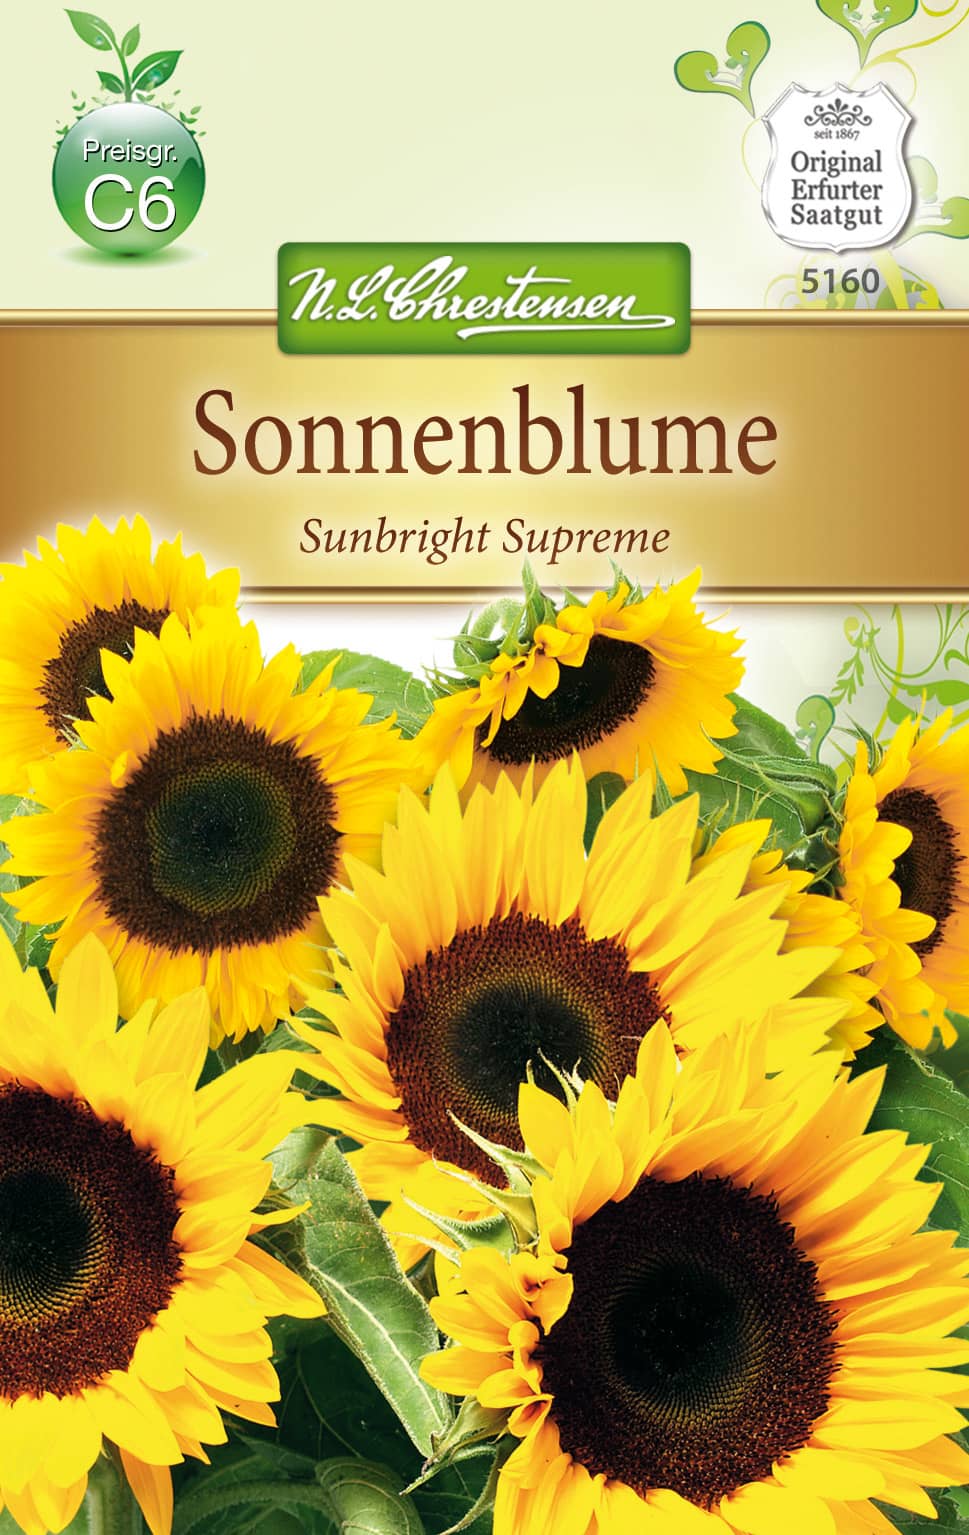 Helianthus Sonnenblume, Sunbright Supreme, für Schnitt